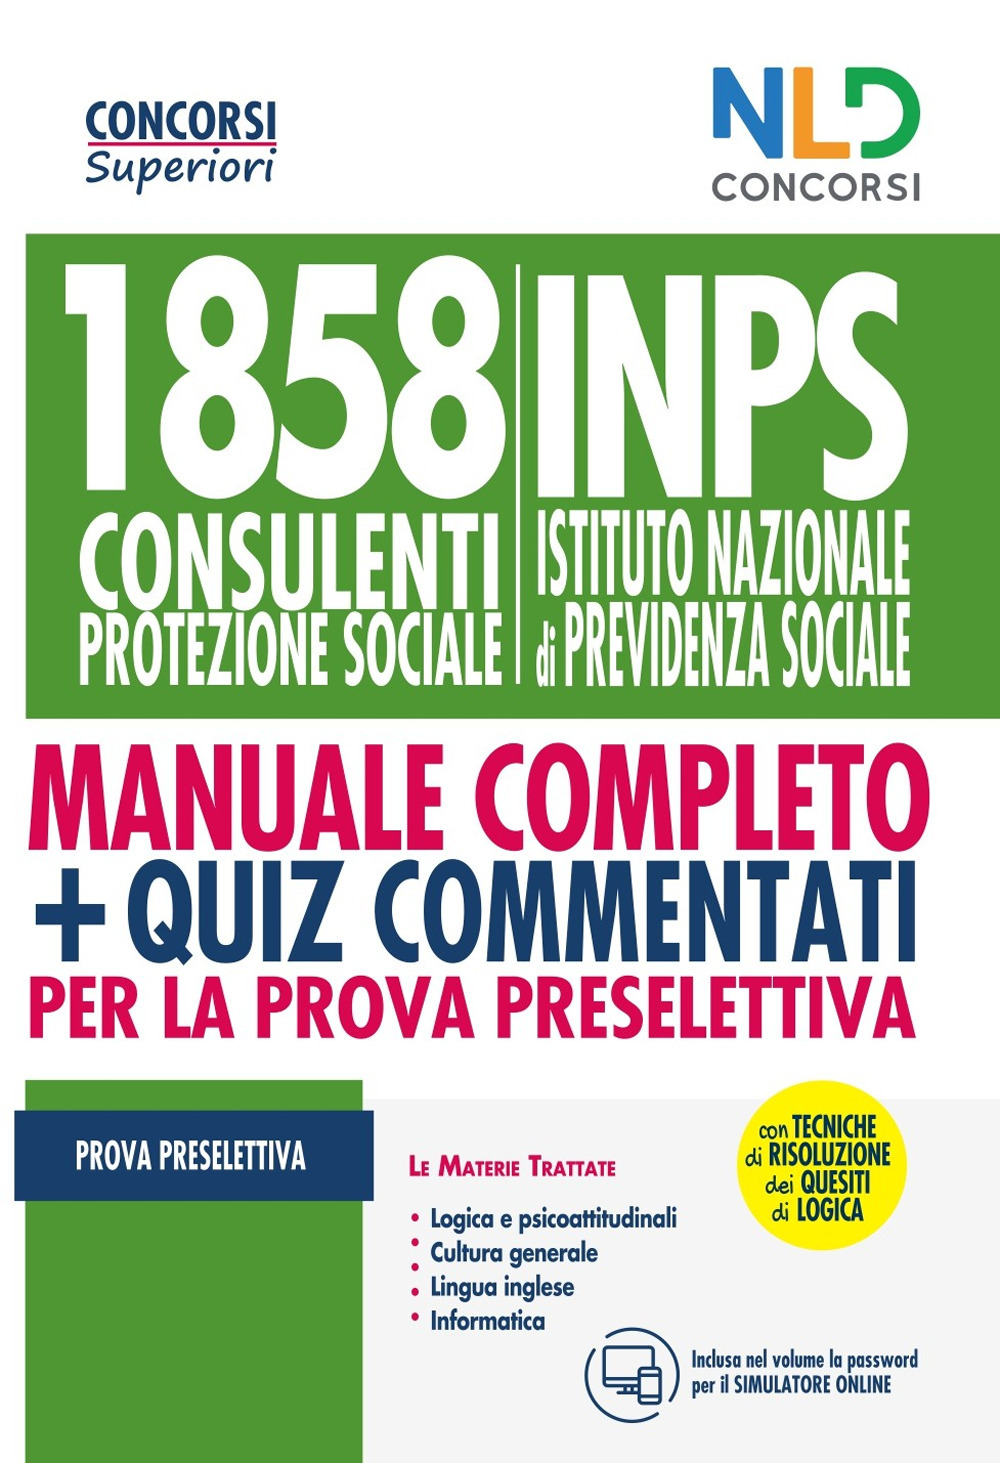 Kit Concorso per 1858 consulenti protezione sociale INPS. Manuale per la preparazione alla prova preselettiva-Quiz commentati